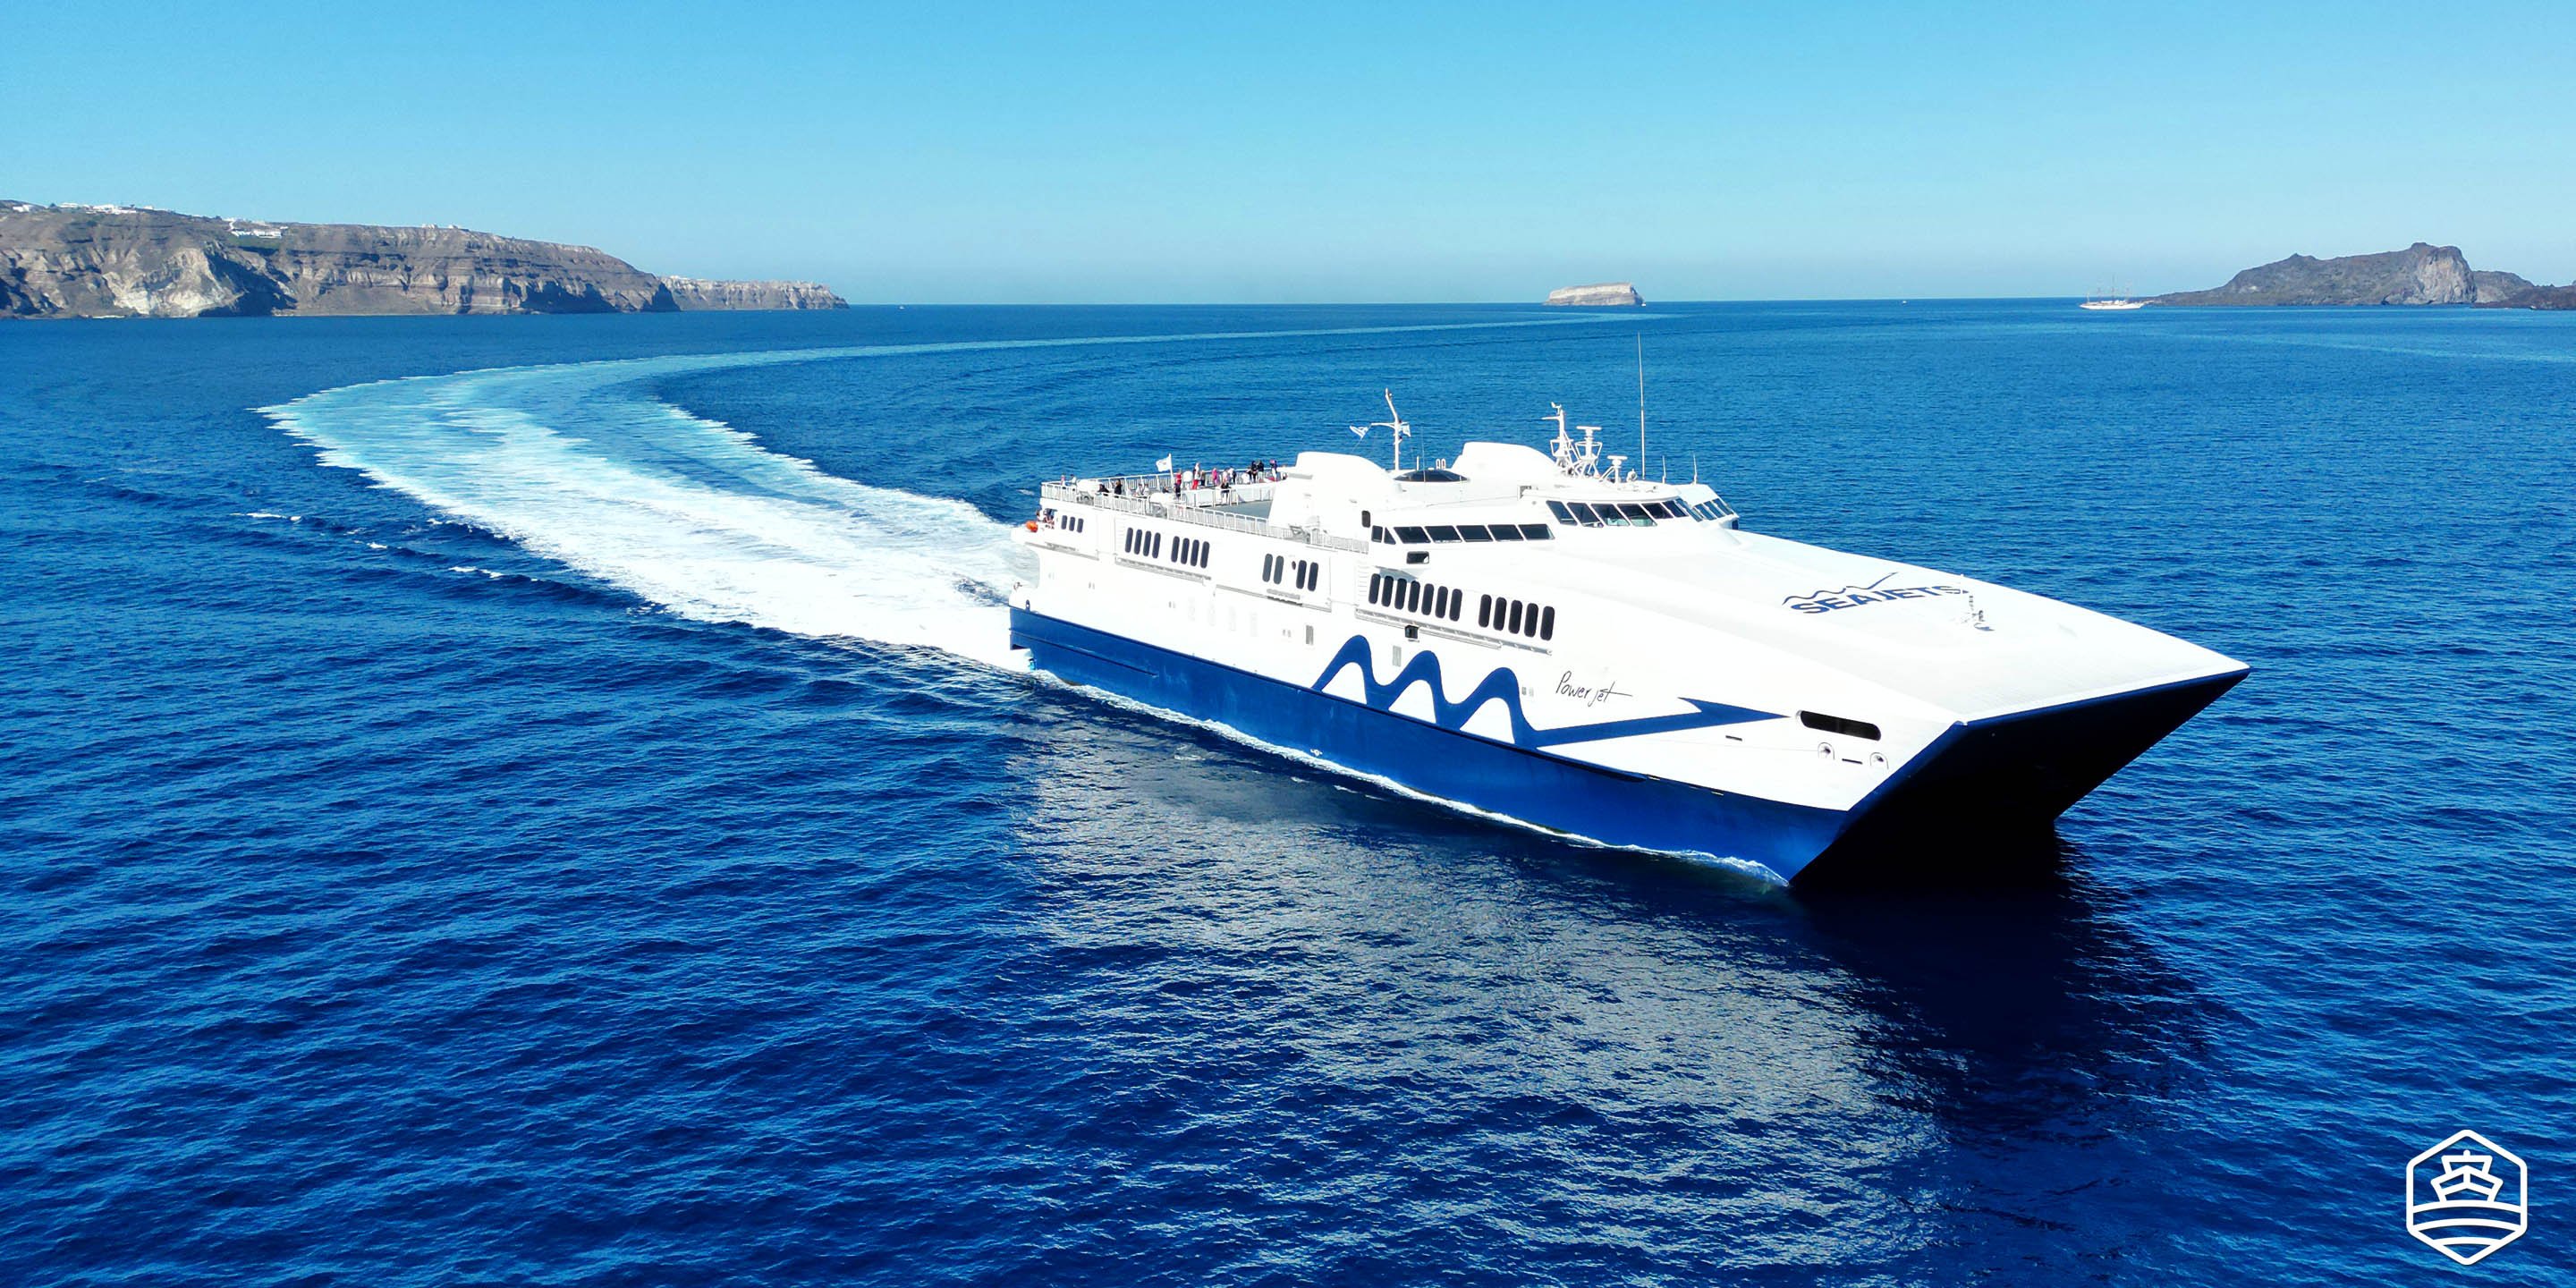 Le ferry à grande vitesse Power Jet de Seajets arrivant à Santorin en provenance de Mykonos, avec la caldeira en arrière-plan.